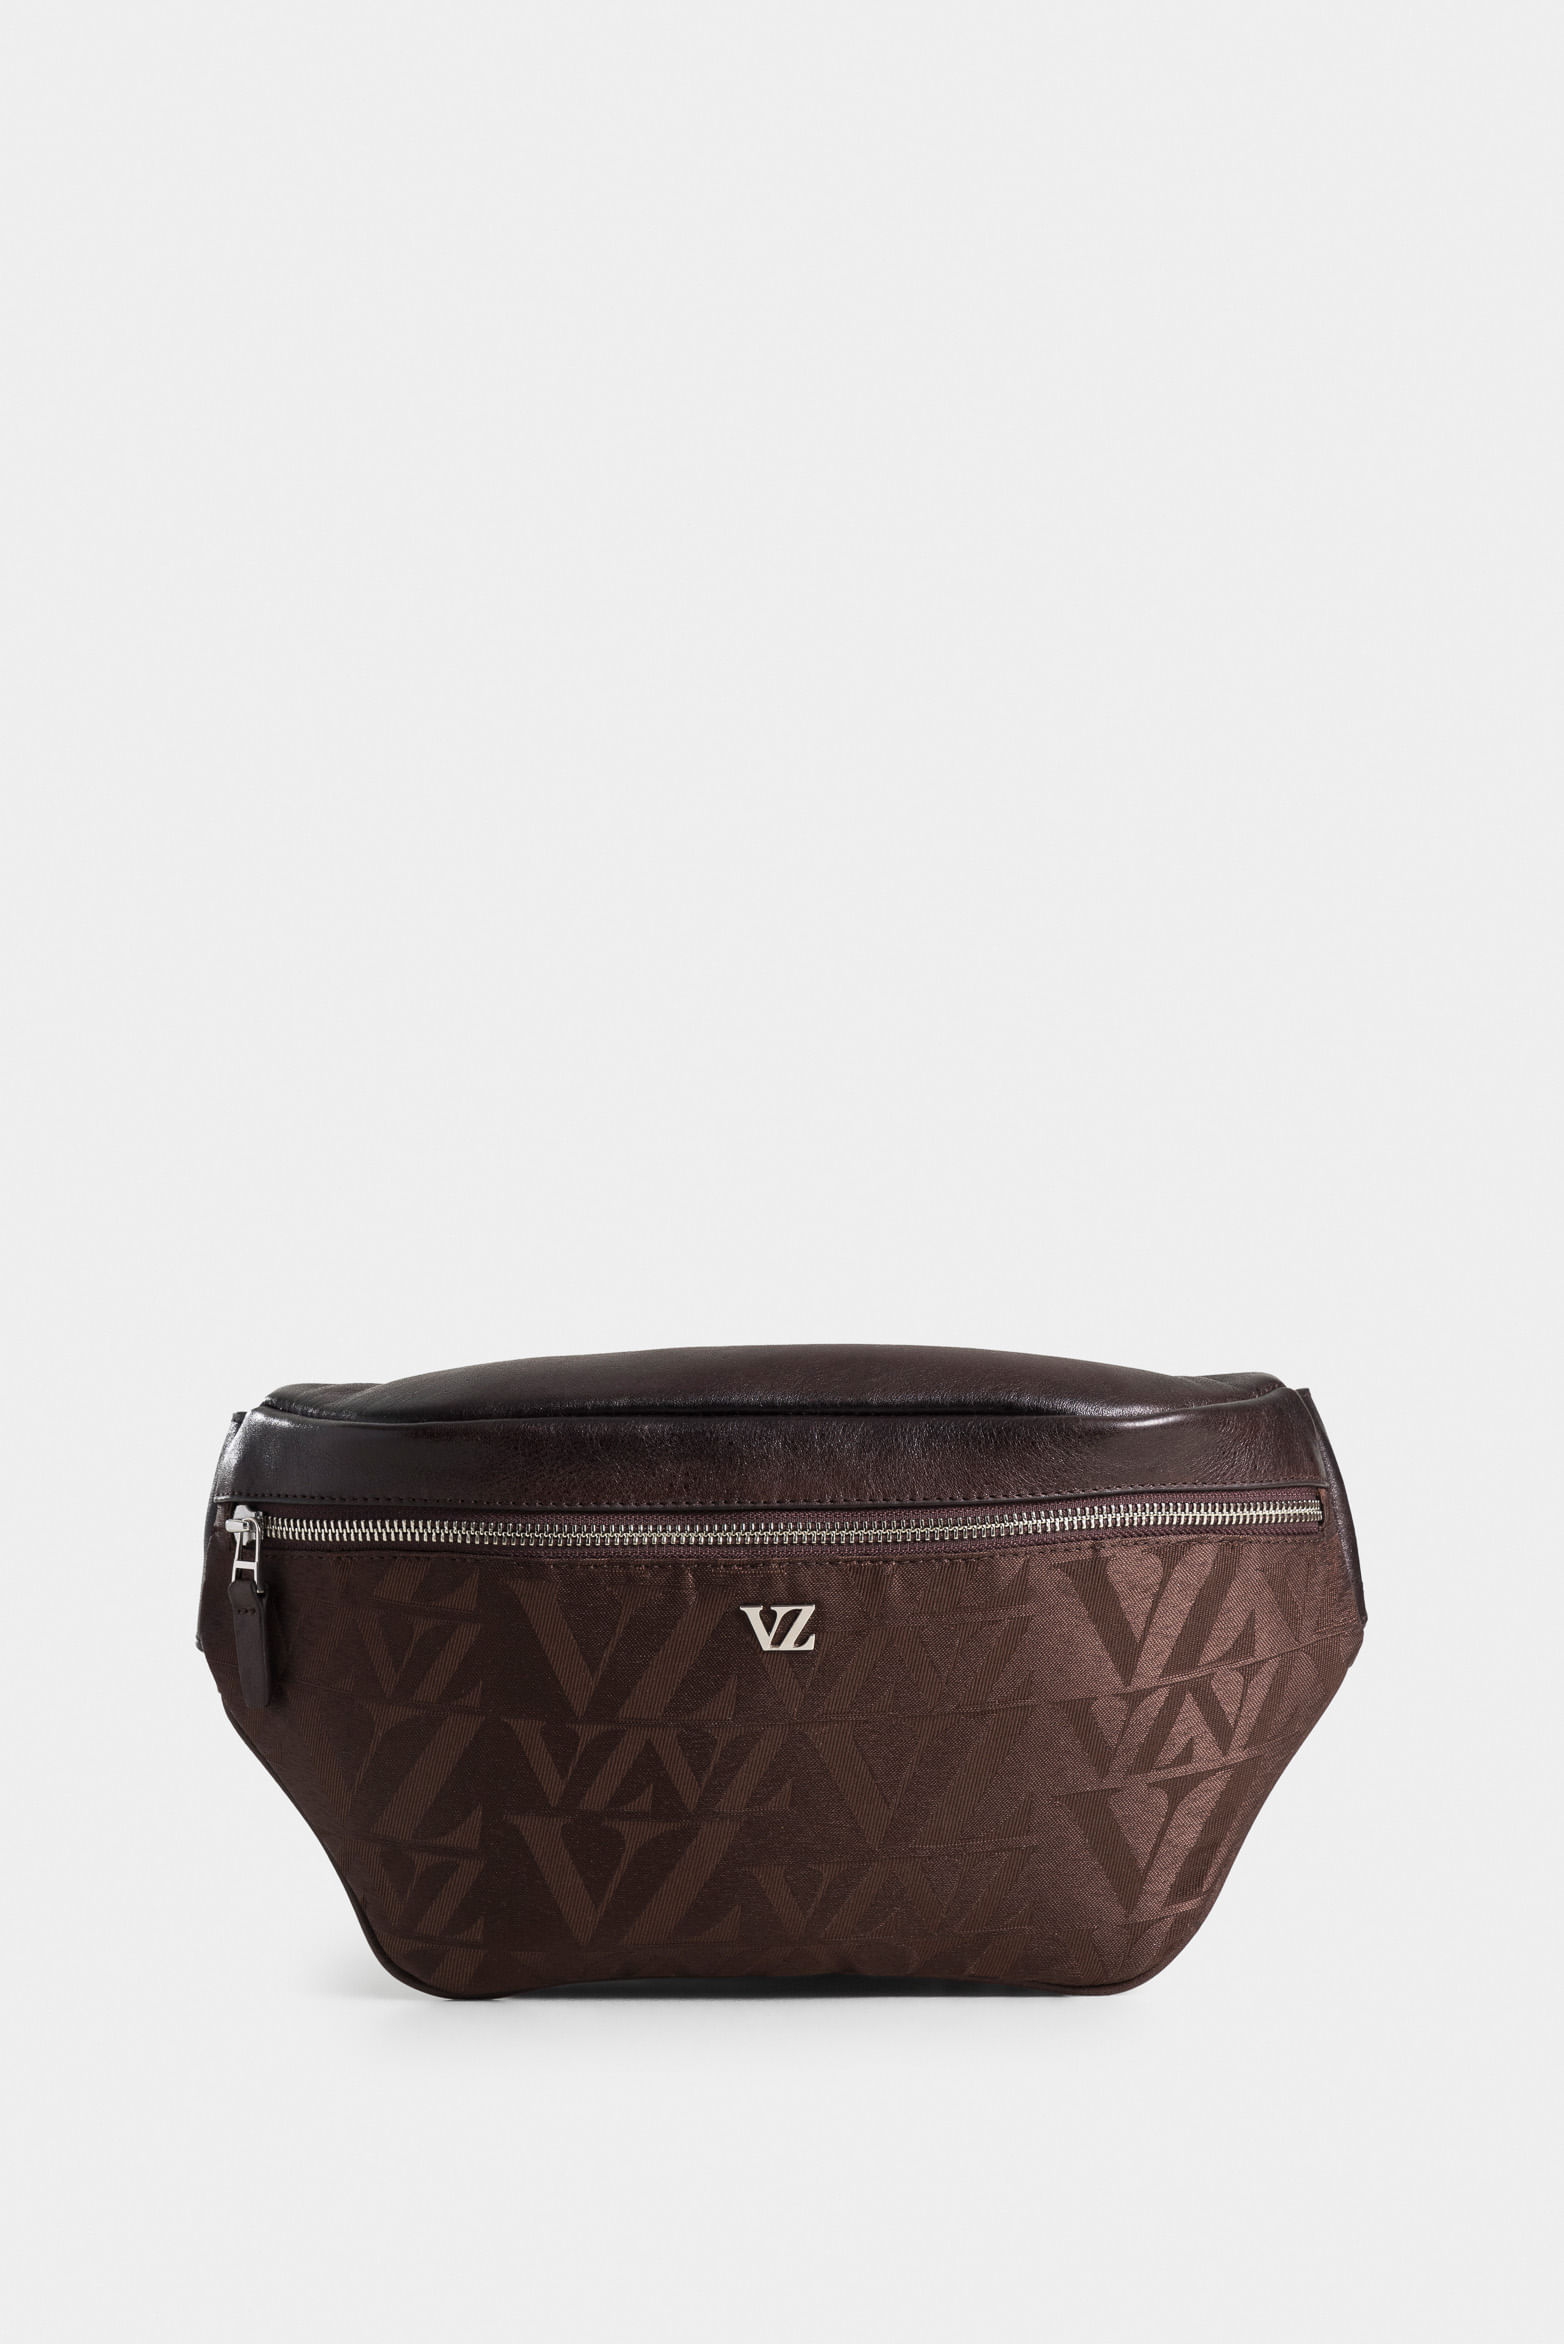 Las mejores ofertas en Manija Superior/Louis Vuitton Satchel Bag